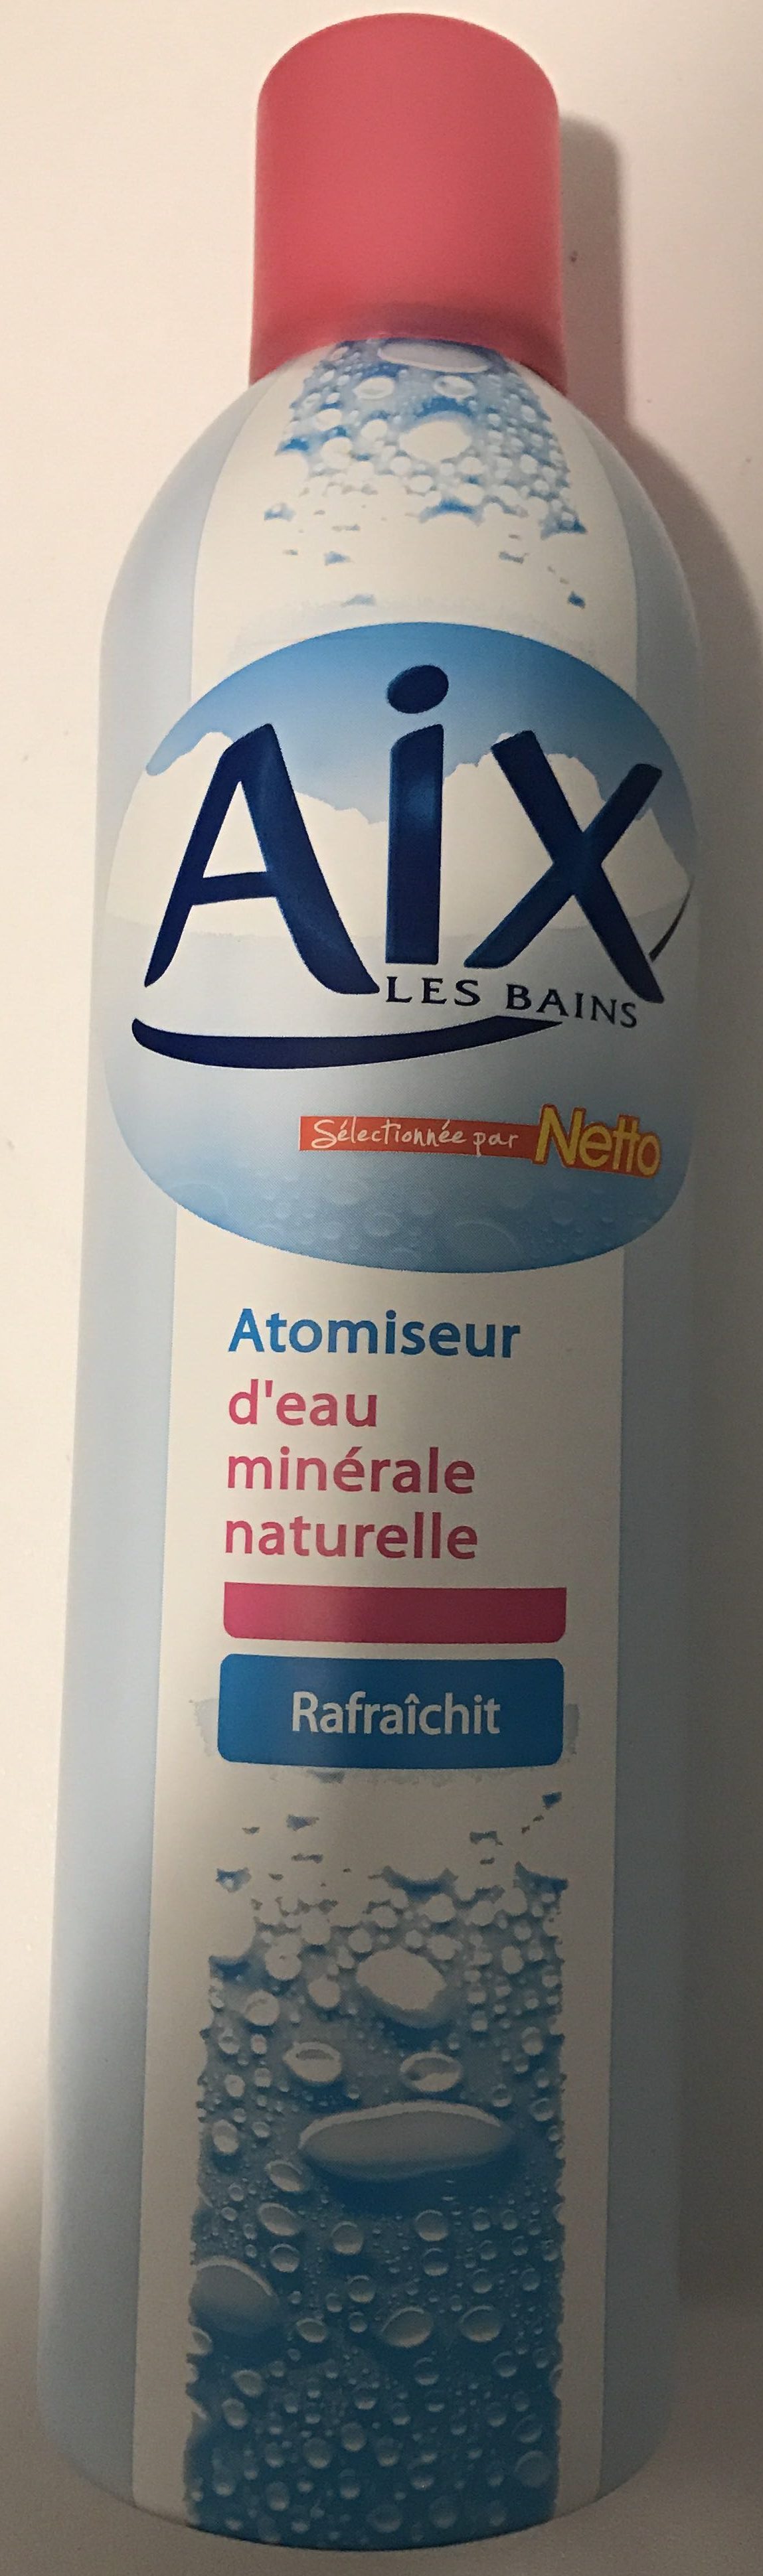 Atomiseur d'eau minérale naturelle - Produkt - fr